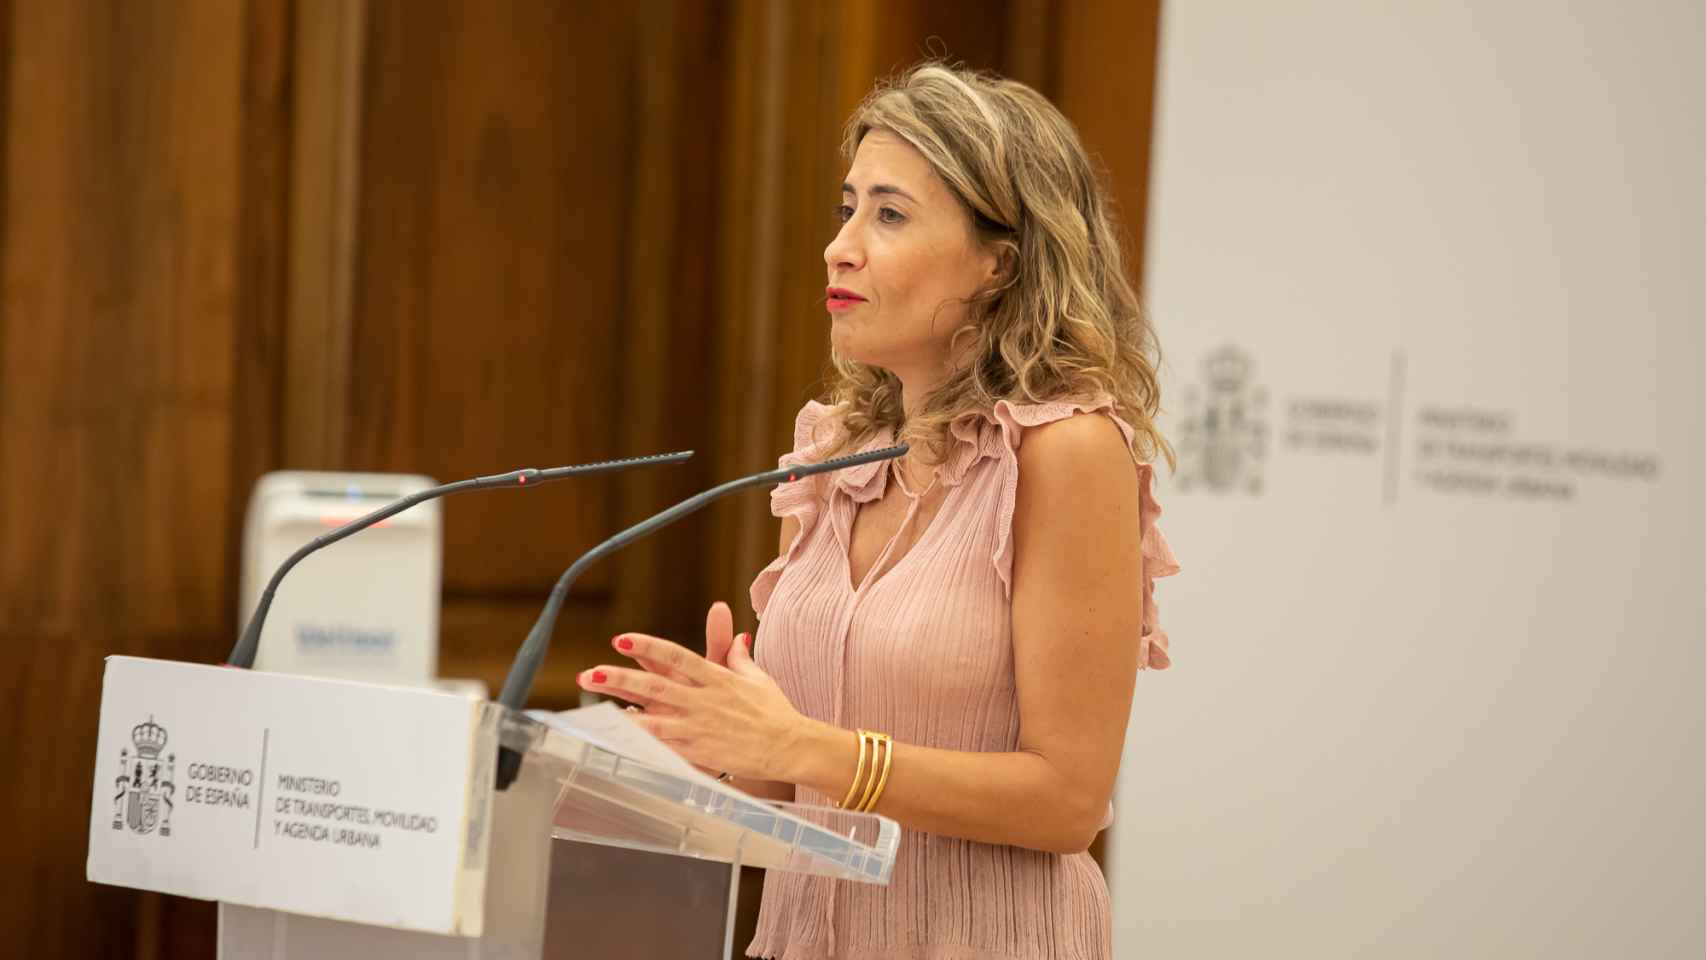 Raquel Sánchez, ministra de Transportes, Movilidad y Agenda Urbana.